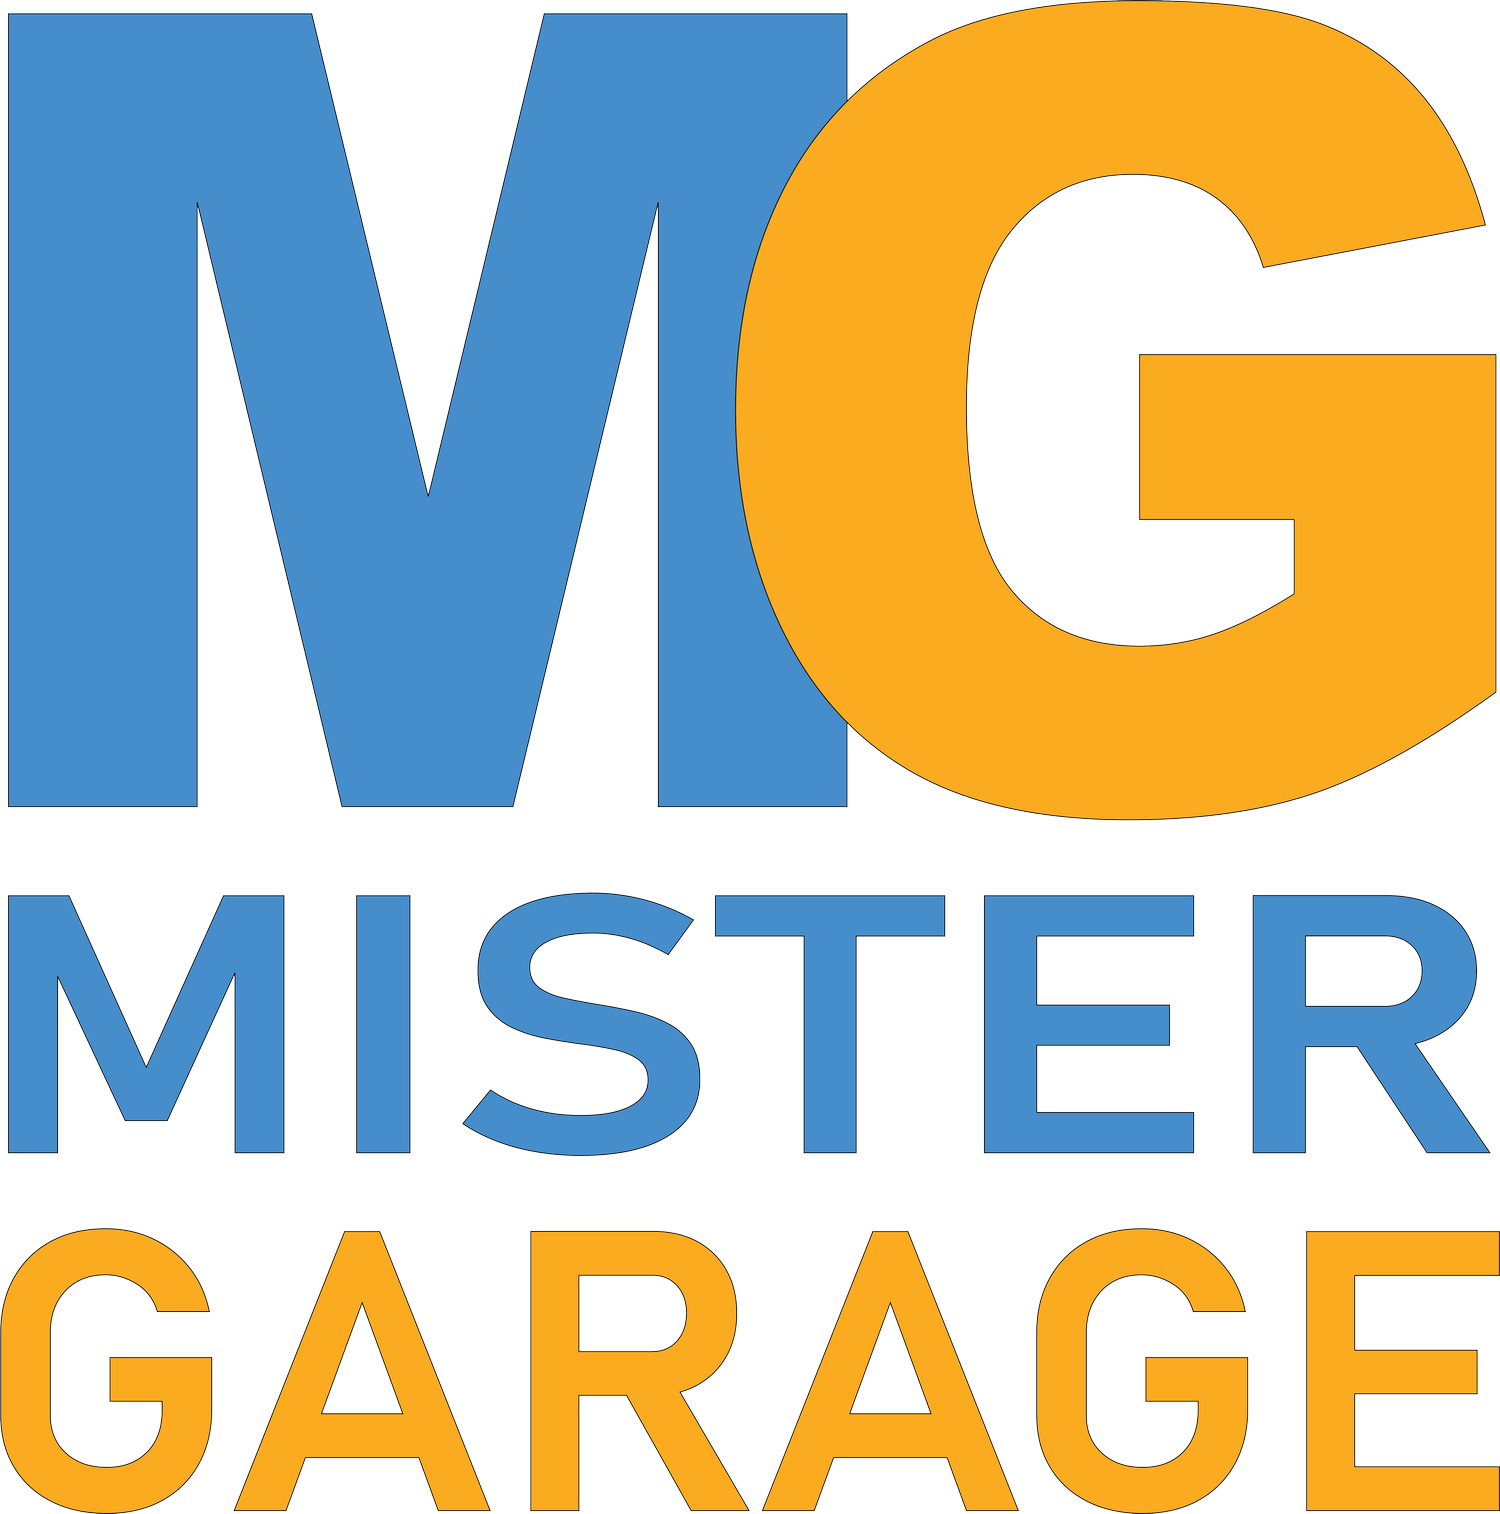 MISTER GARAGE  |  GARAGE DESIGN STUDIO